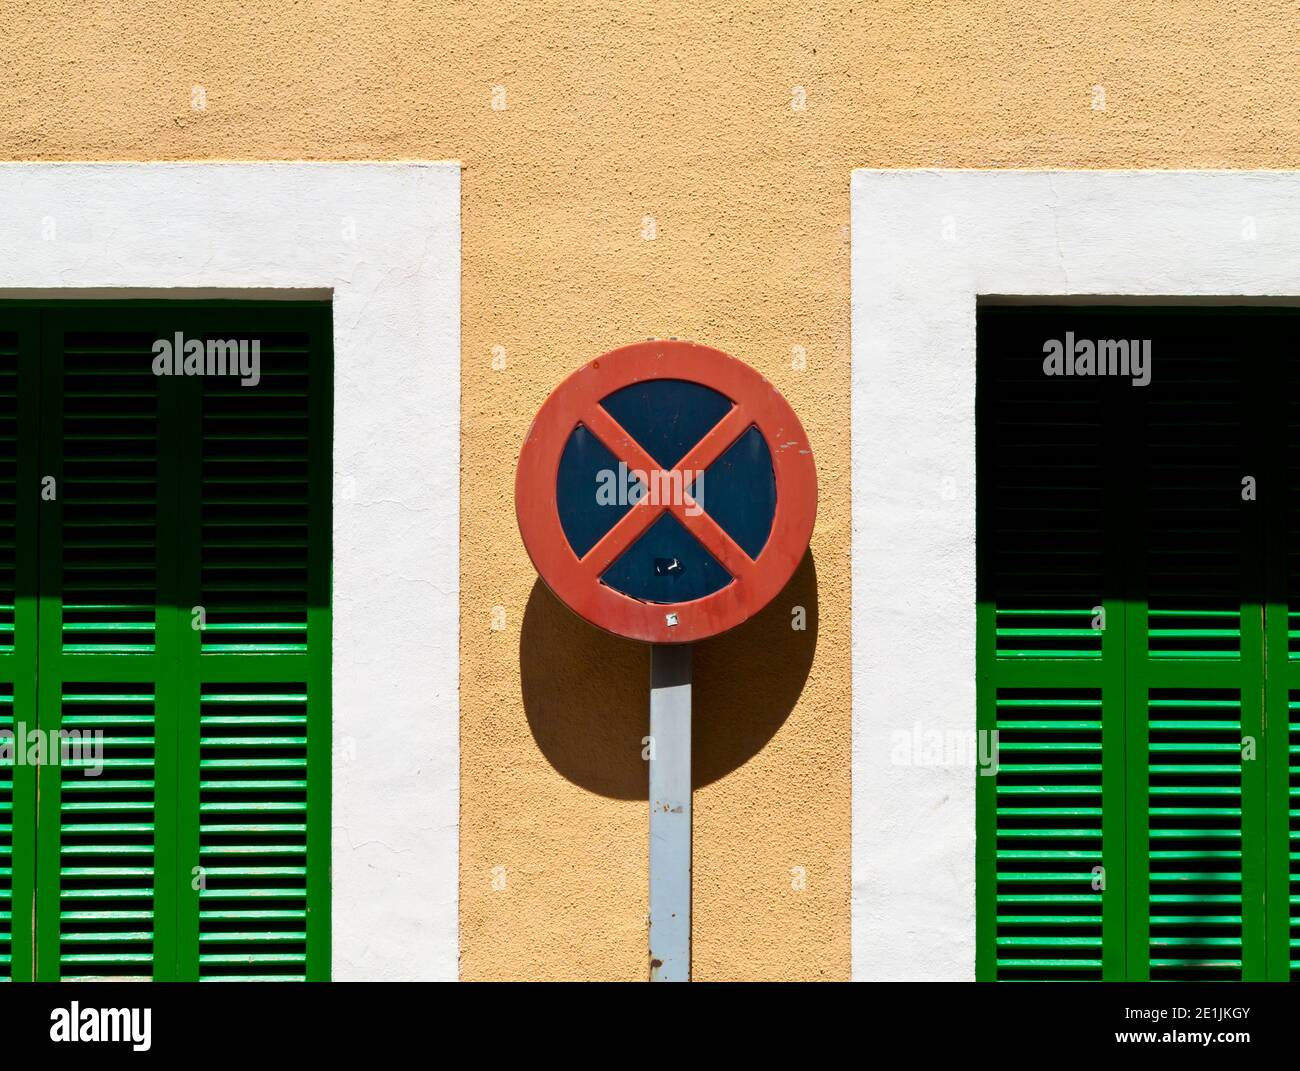 No hay señal de parada o de aparcamiento en una calle estrecha típica de Soller un pueblo en la costa noroeste de Mallorca en las Islas Baleares de España. Foto de stock